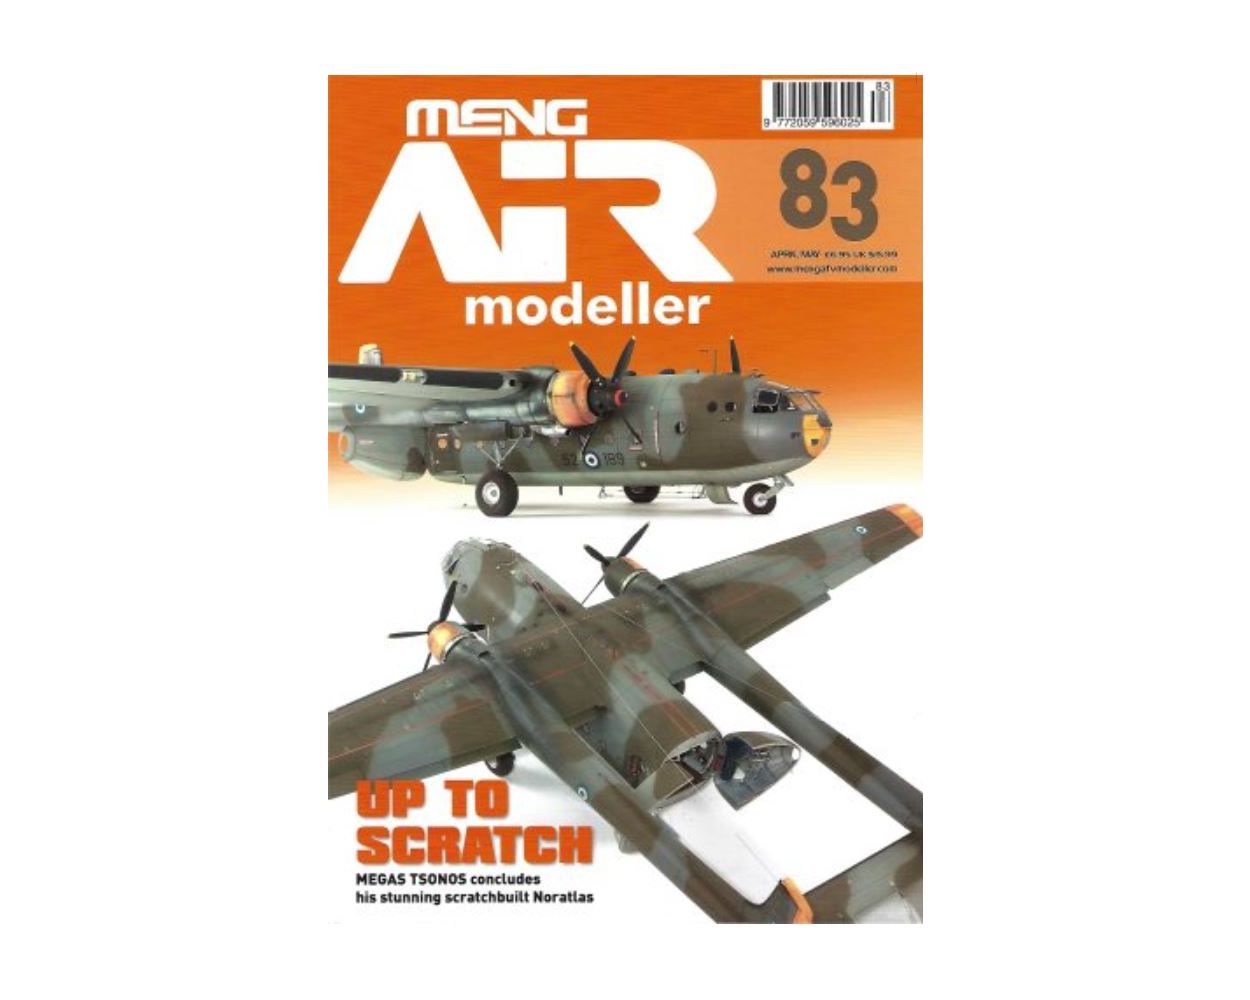 Meng AIR Modeller - Issue 61 - AFV modeller